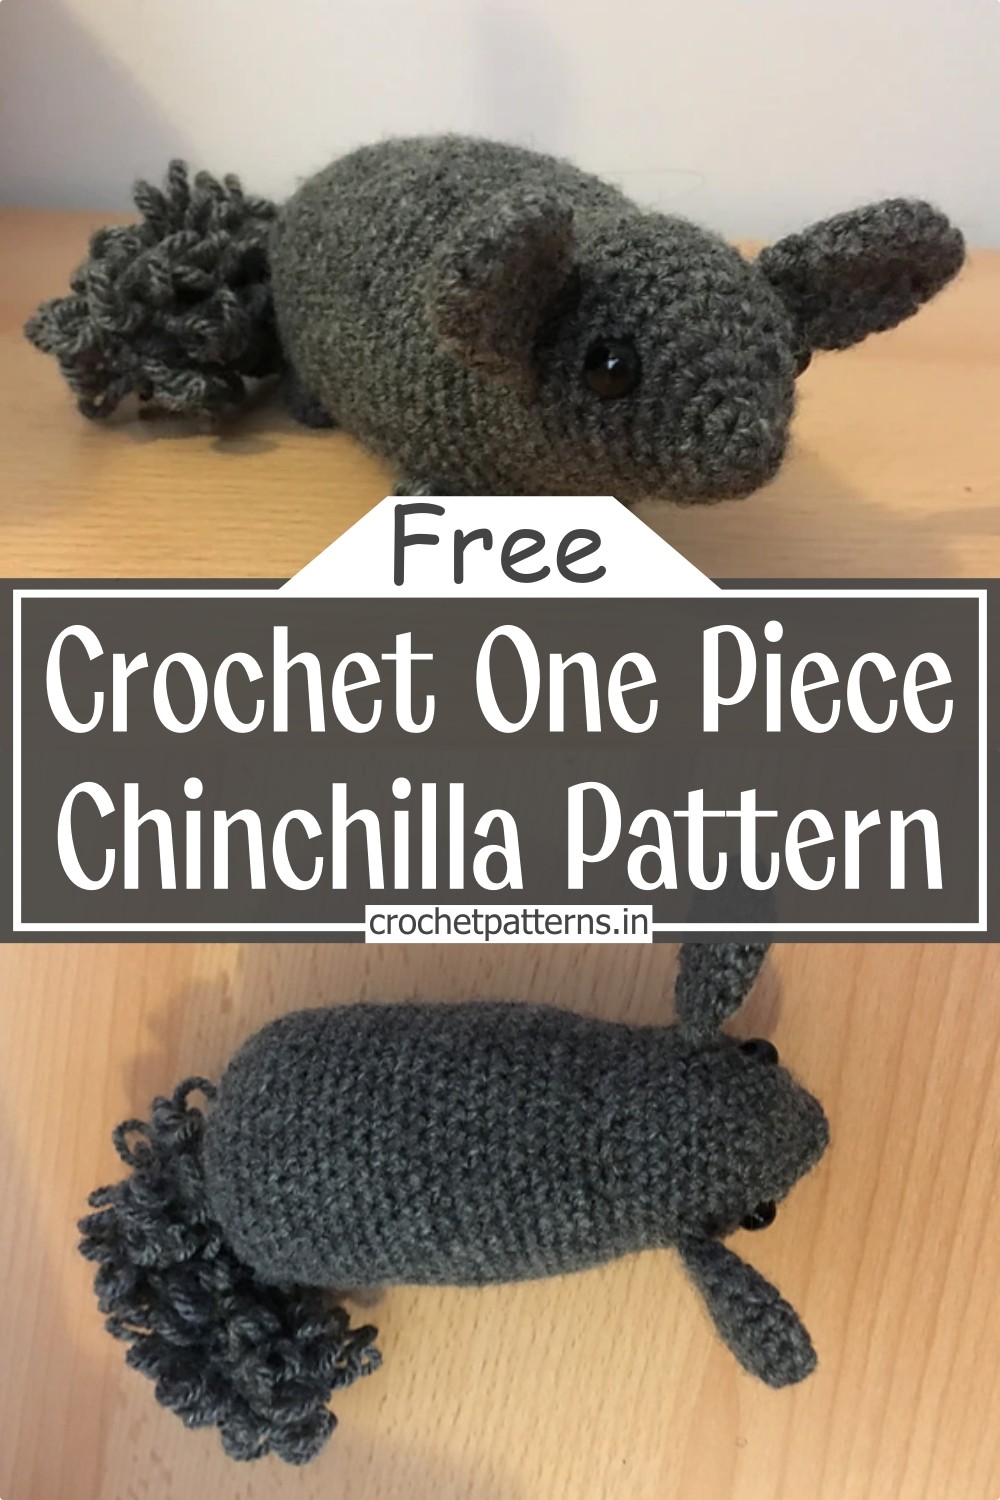 Crochet One Piece Chinchilla Pattern